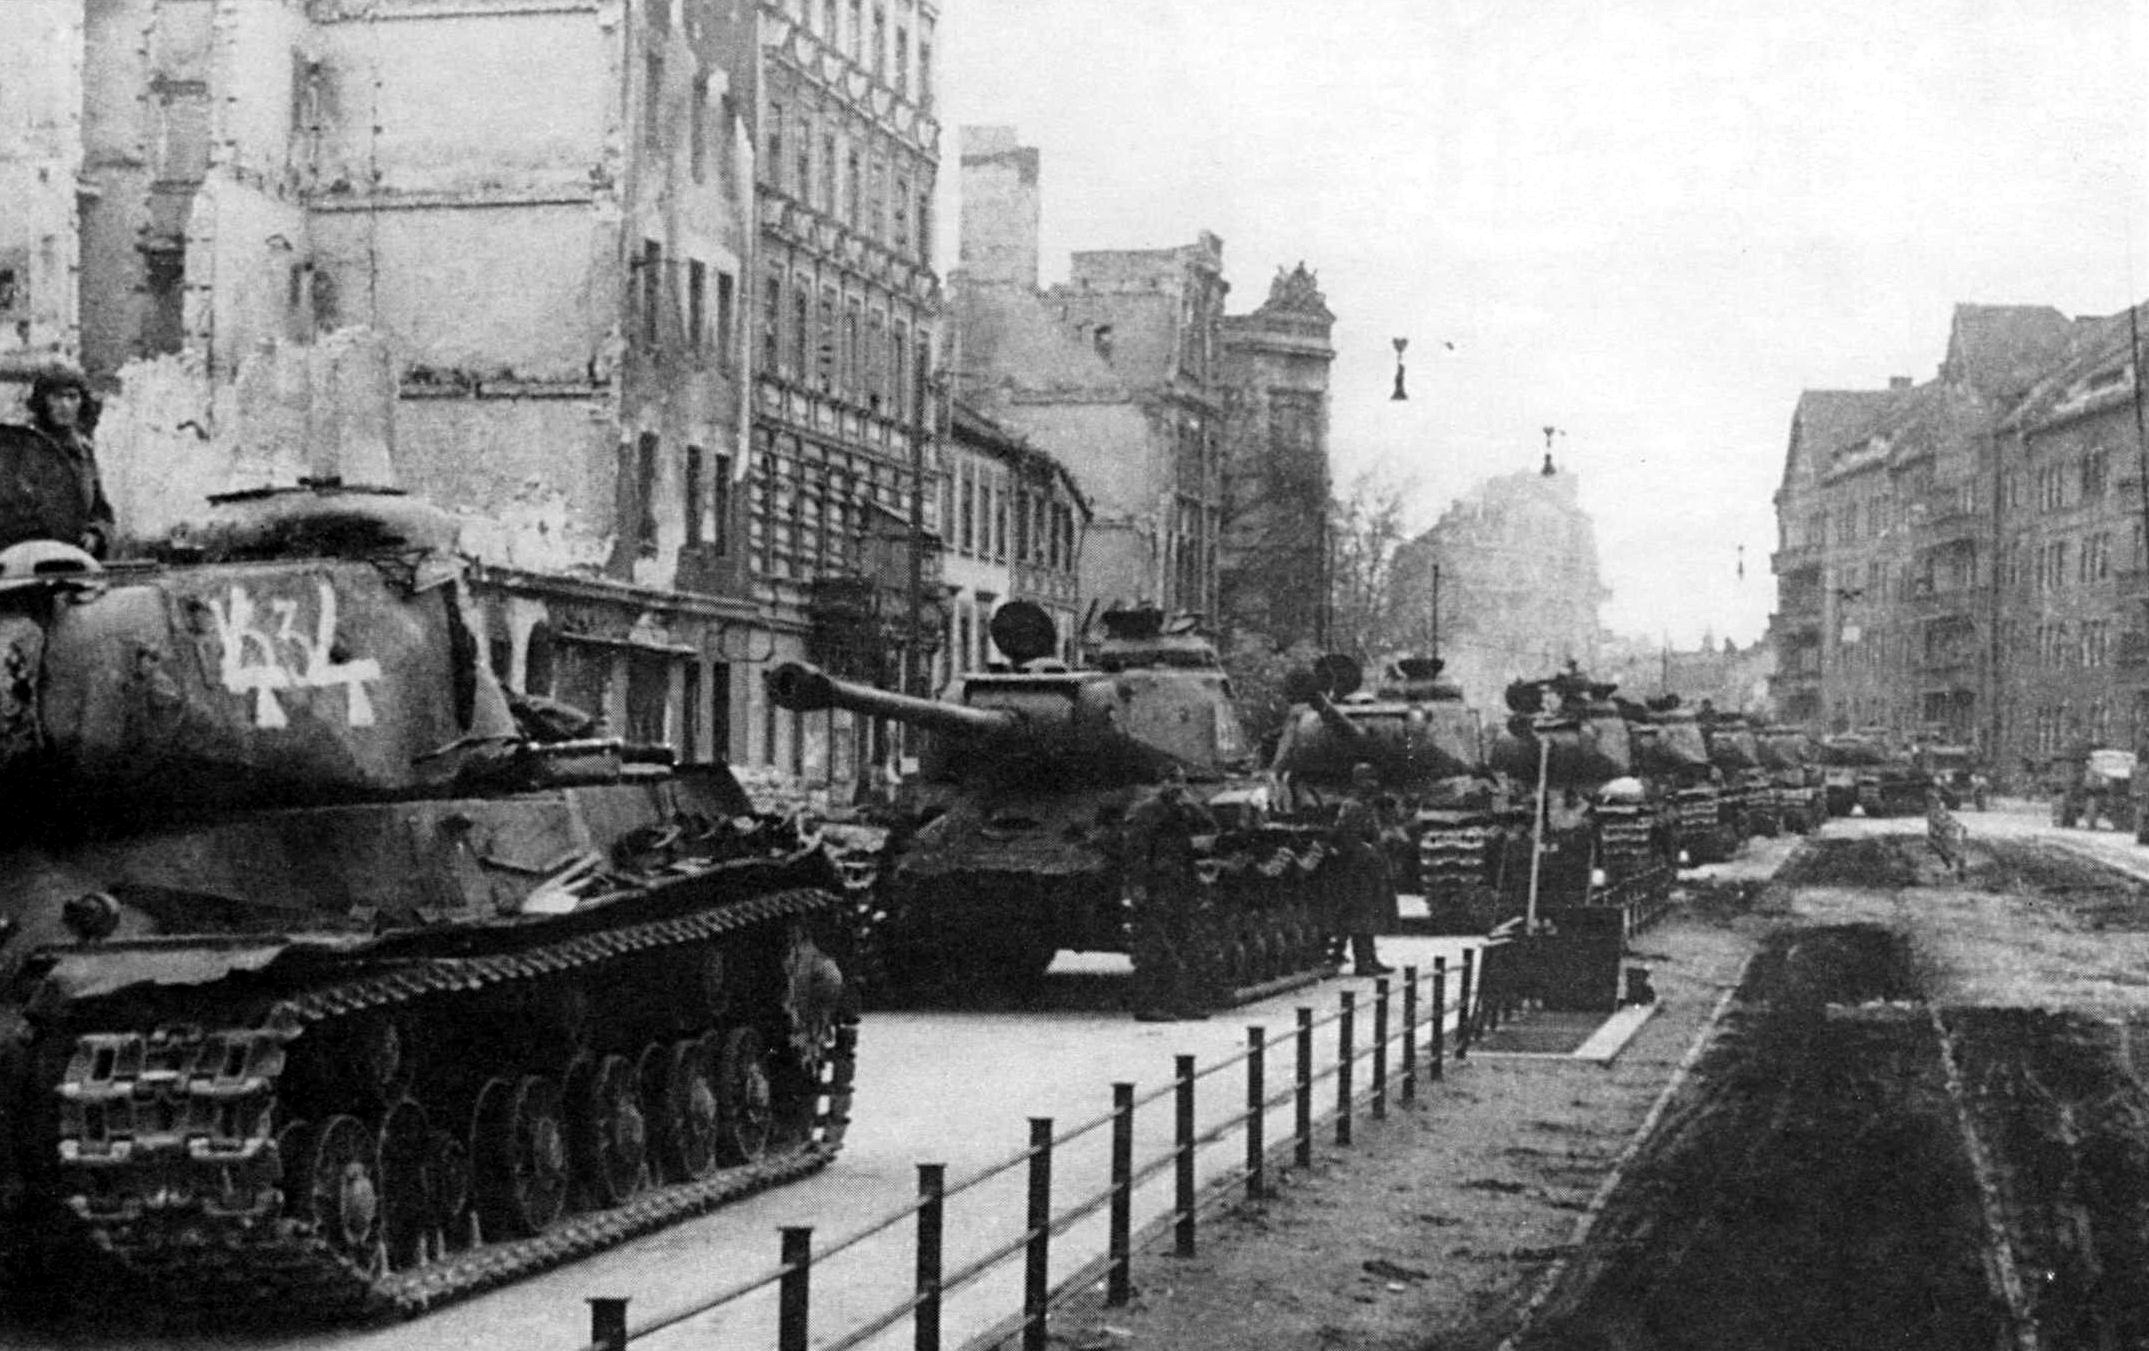 Ис вов. ИС-2 В Берлине. Танк ИС 2 В Берлине. Танк ис2 Берлин 1945. ИС-2 В Берлине 1945.